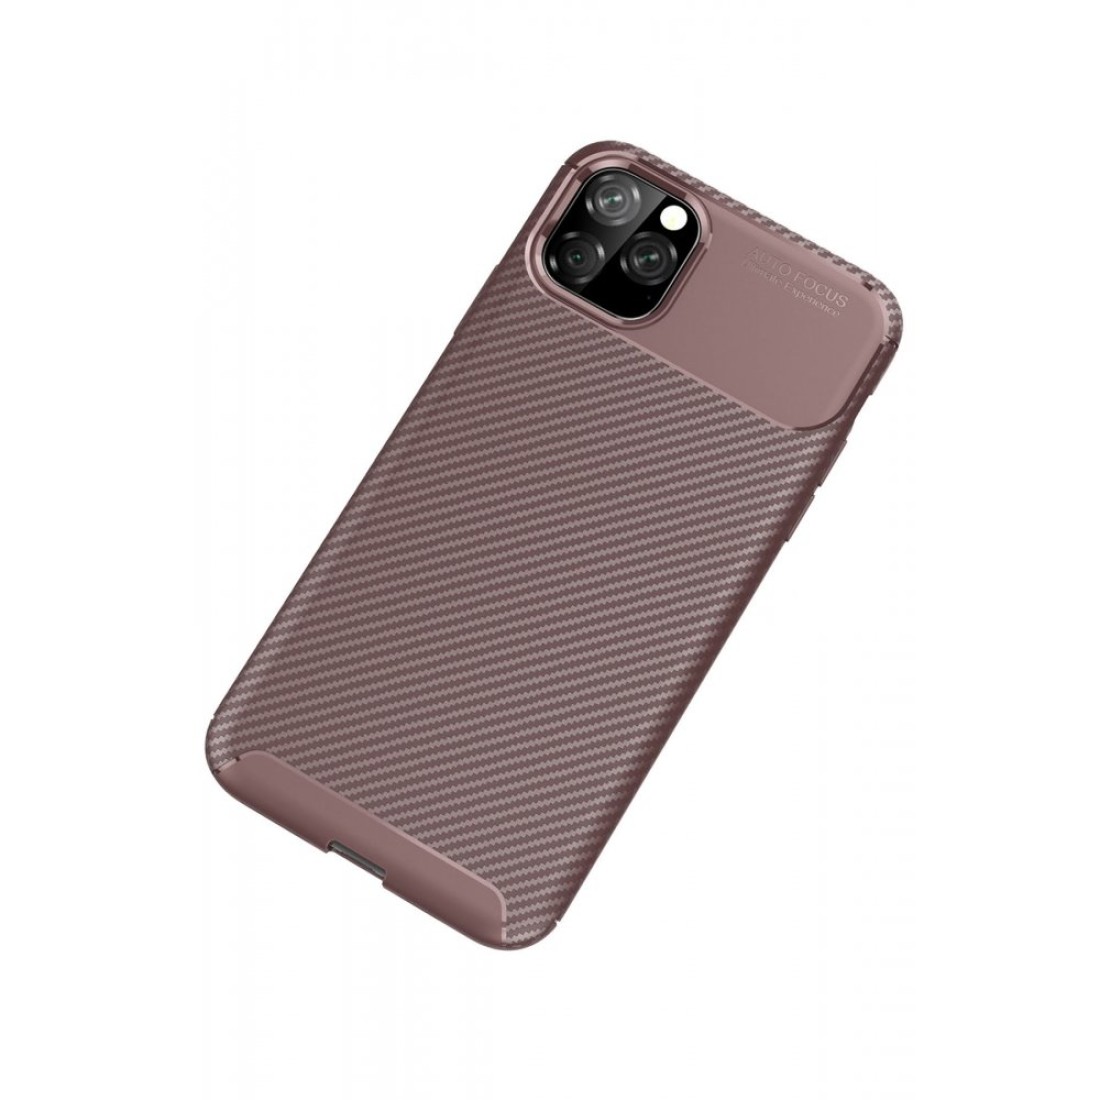 Apple iPhone 11 Pro Max Kılıf Focus Karbon Silikon - Kahverengi